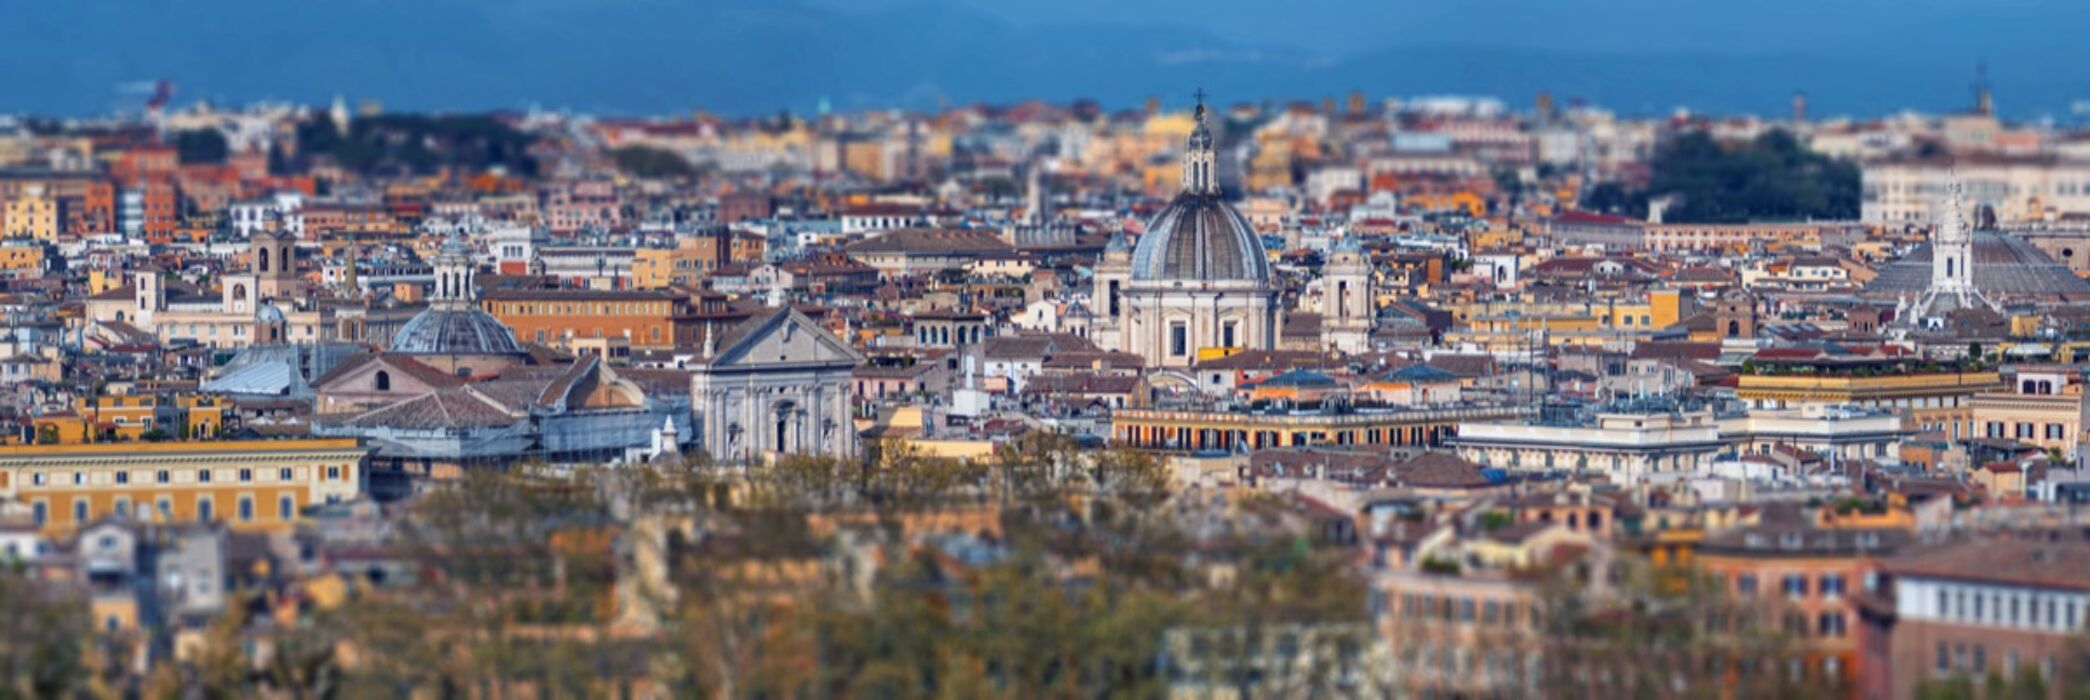 Trekking Urbano di Roma: I Sette Colli e la Terrazza del Vittoriano desktop picture